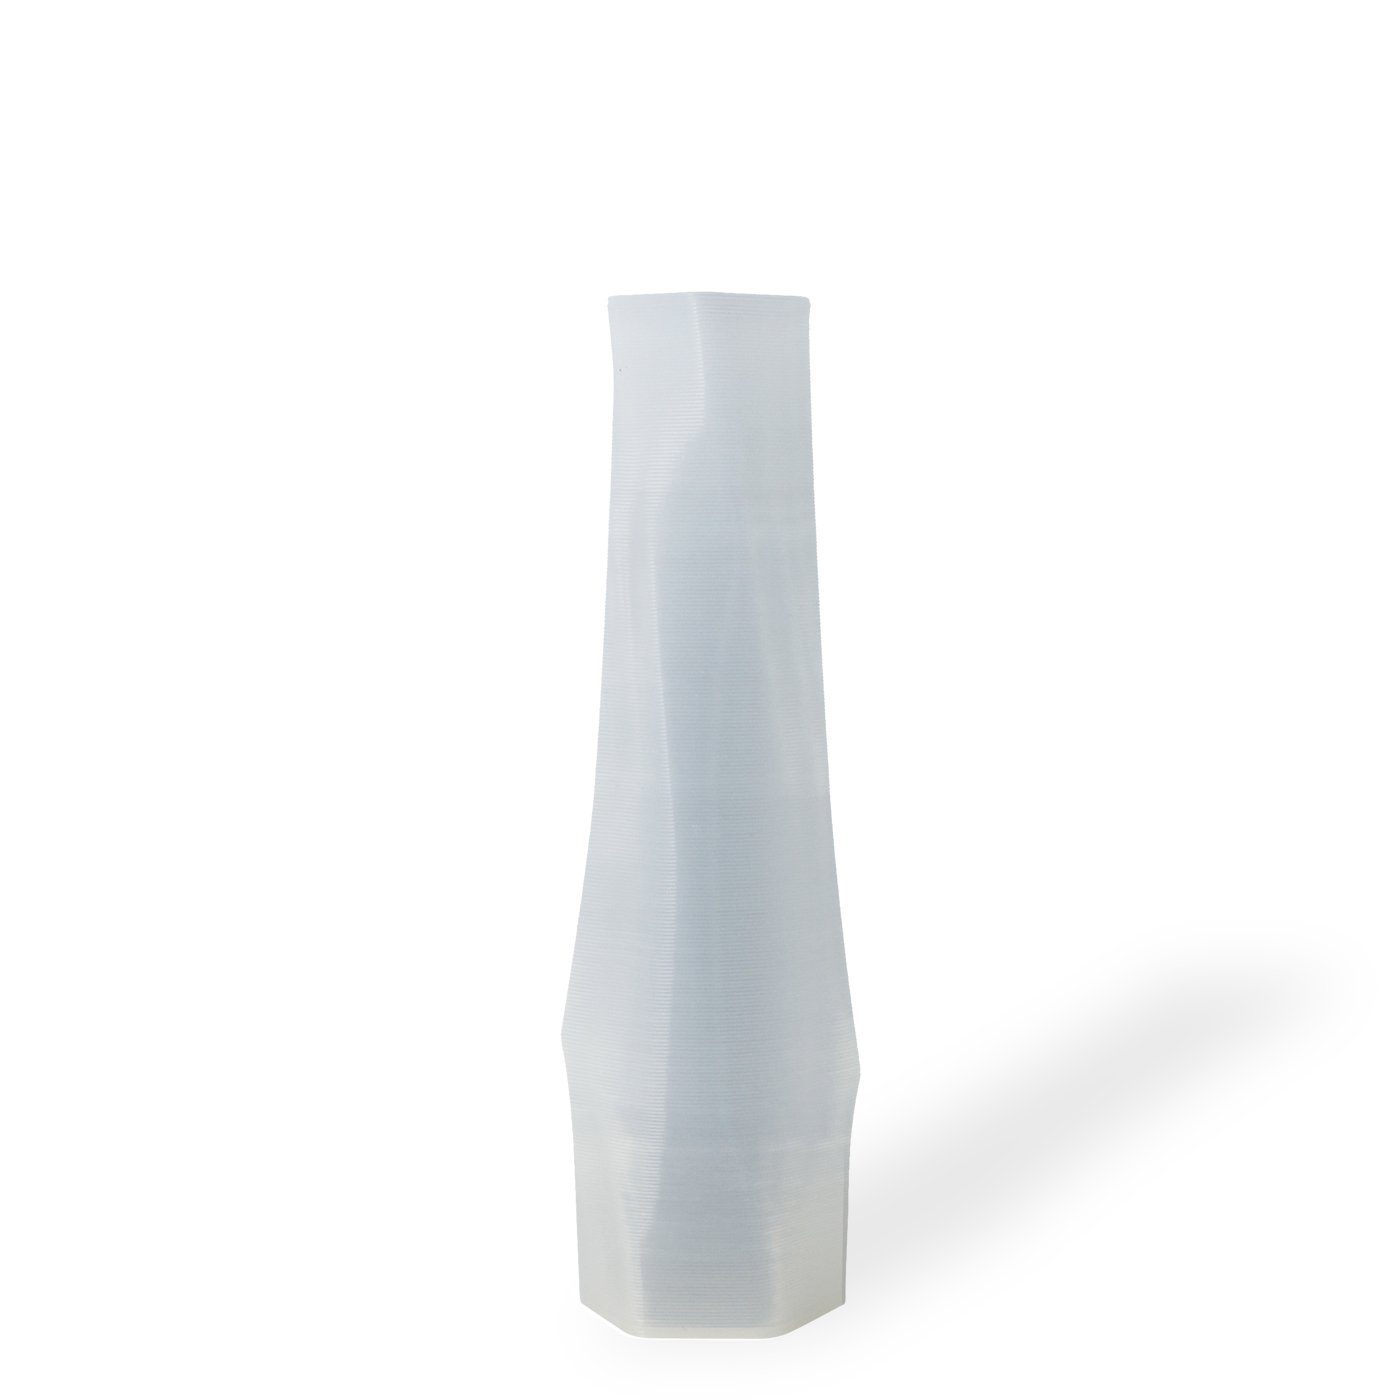 Shapes - Decorations Dekovase the vase - hexagon (deco), 3D Vasen, viele Farben, 100% 3D-Druck (Einzelmodell, 1 Vase), Dekorative Vase aus durchsichtigem Kunststoff Weiß